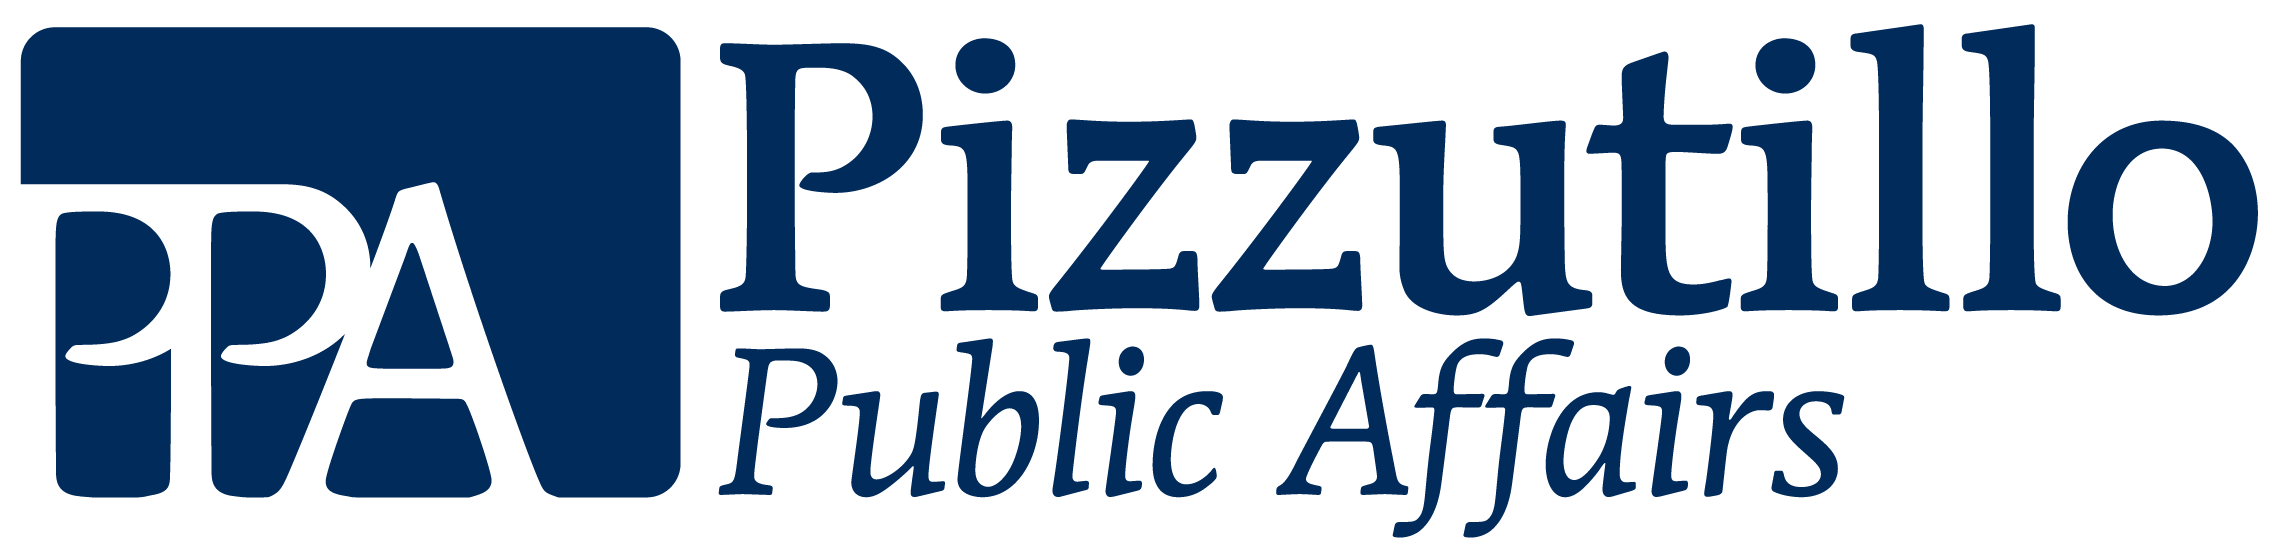 Pizzutillo Public Affairs